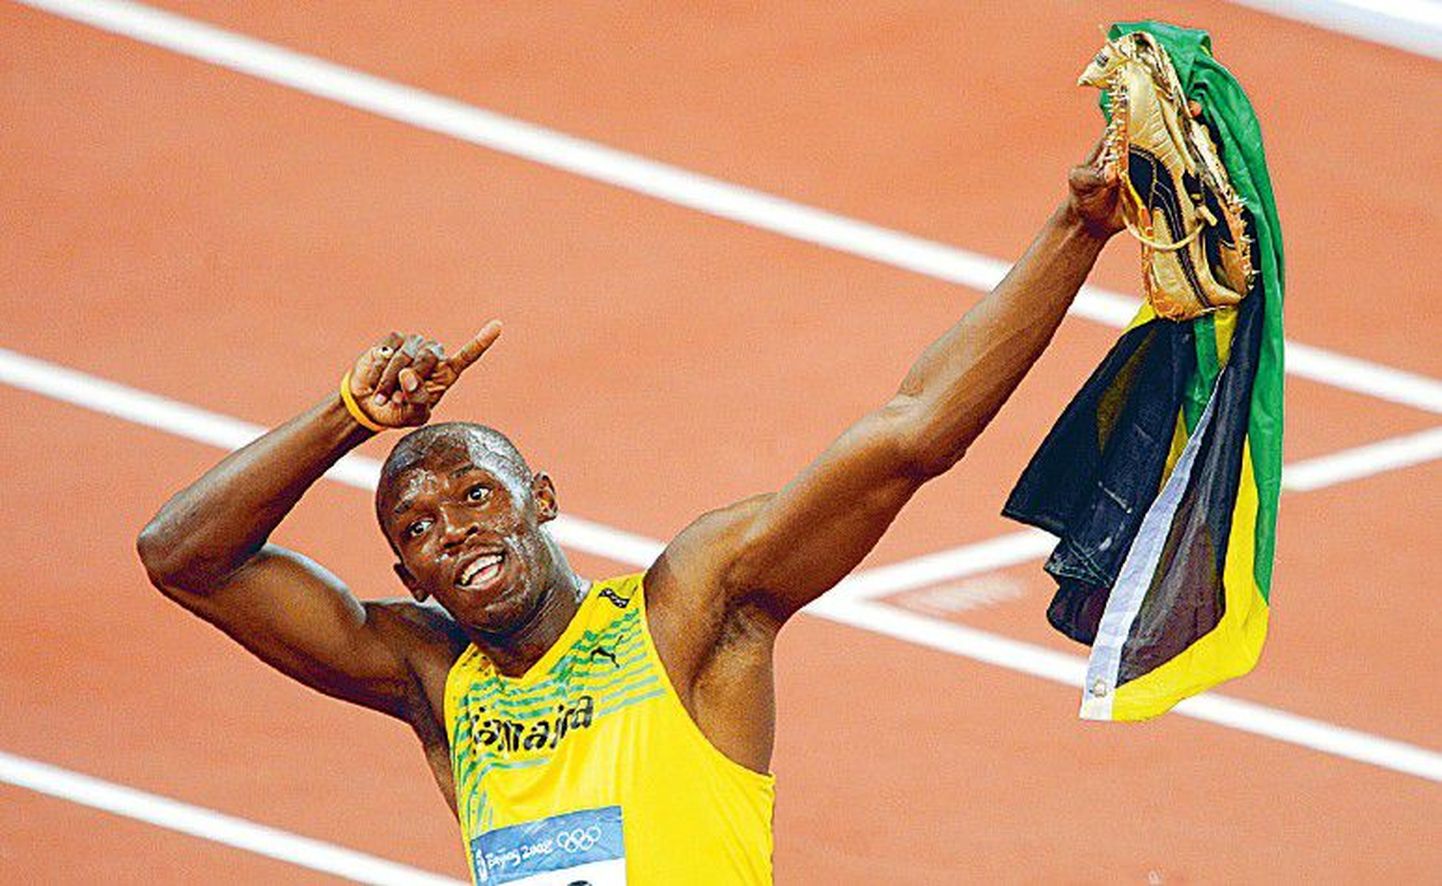 Olümpiale maailmarekordi omanikuna sõitnud Usain Bolt parandas tippmarki ja sai kulla.